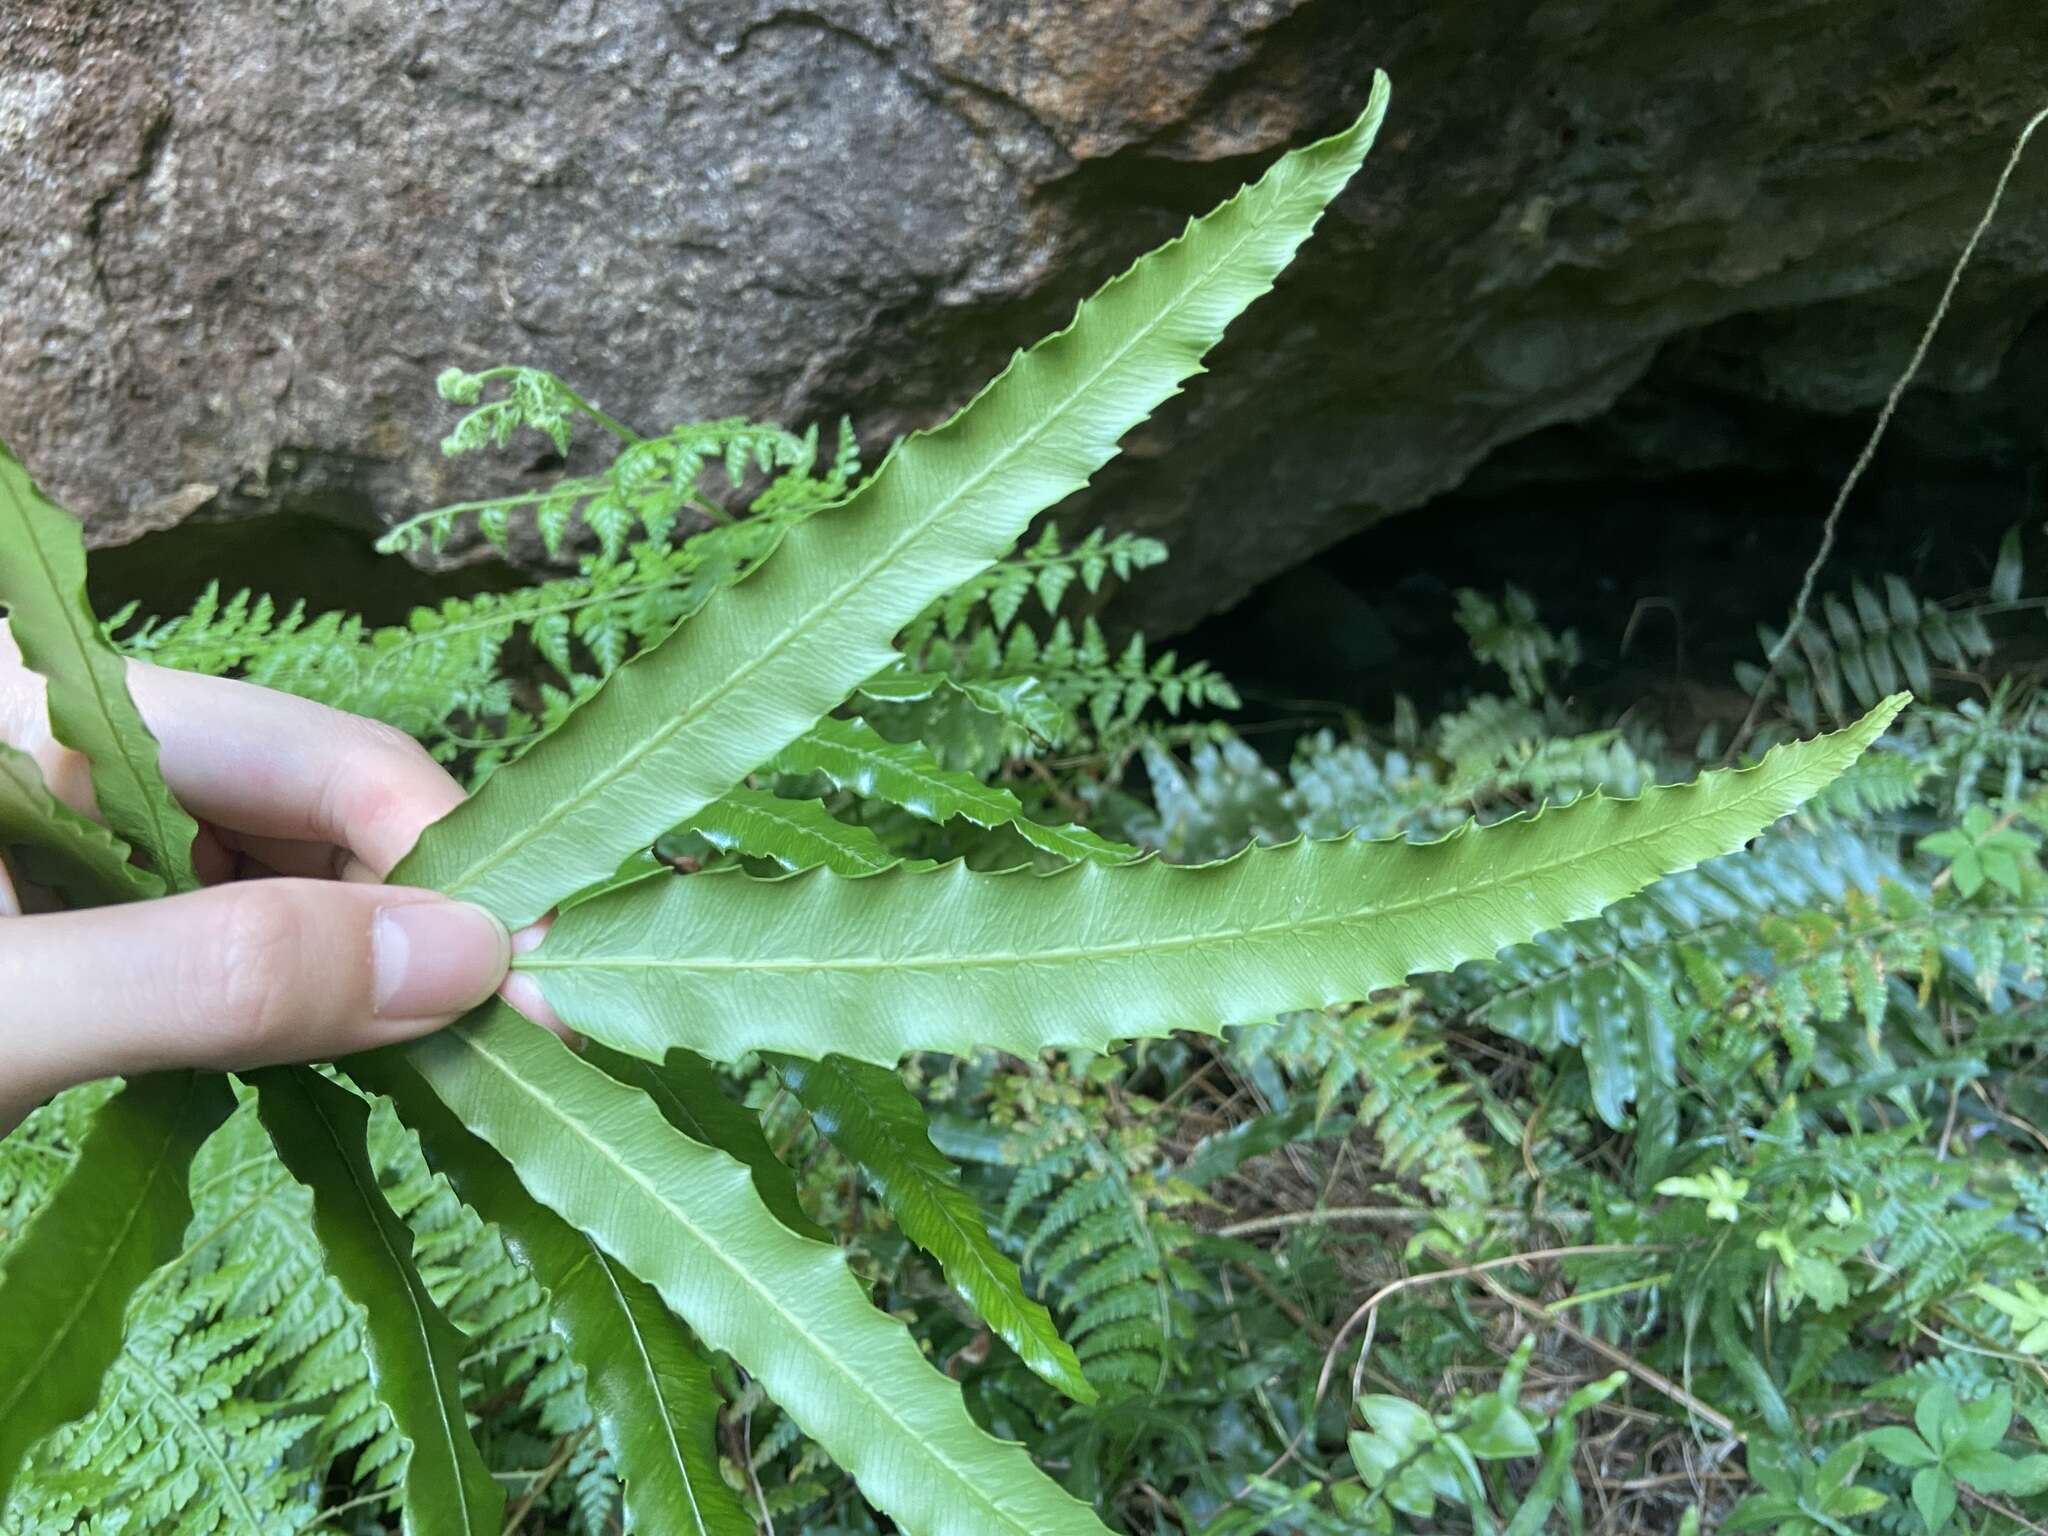 Image of Plenasium banksiifolium (C. Presl) C. Presl